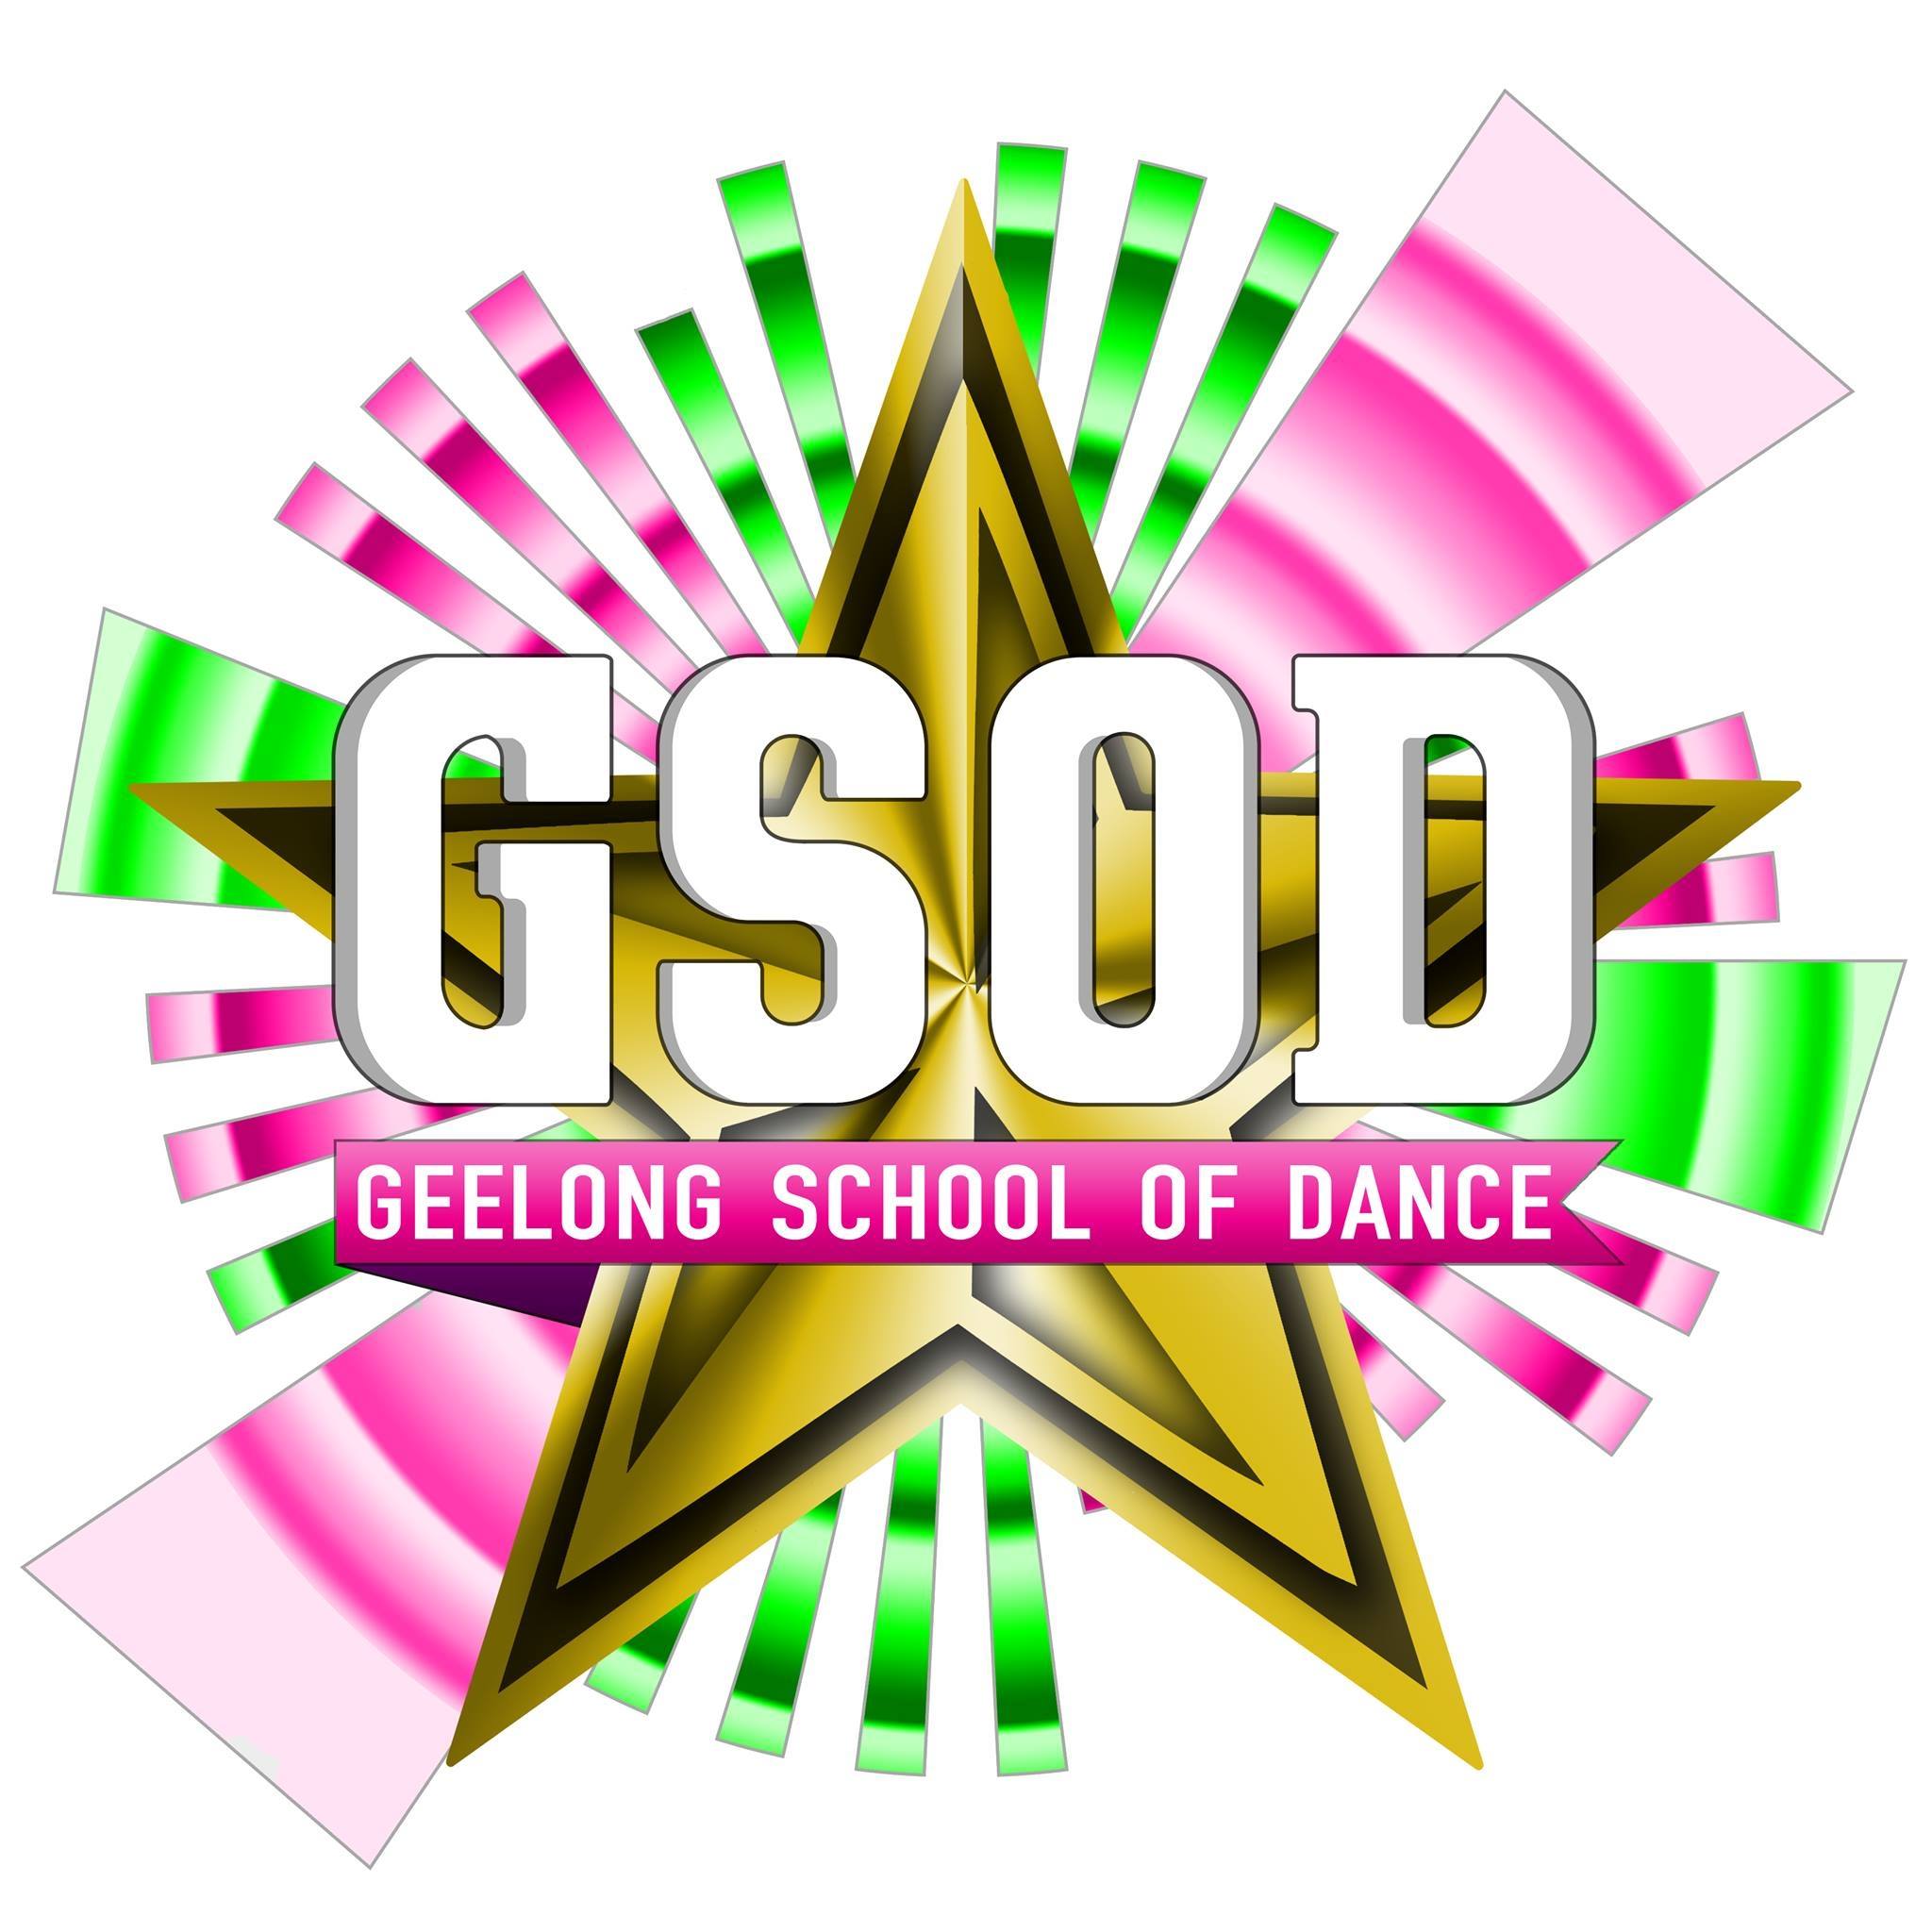 Geelong School of Dance Logo